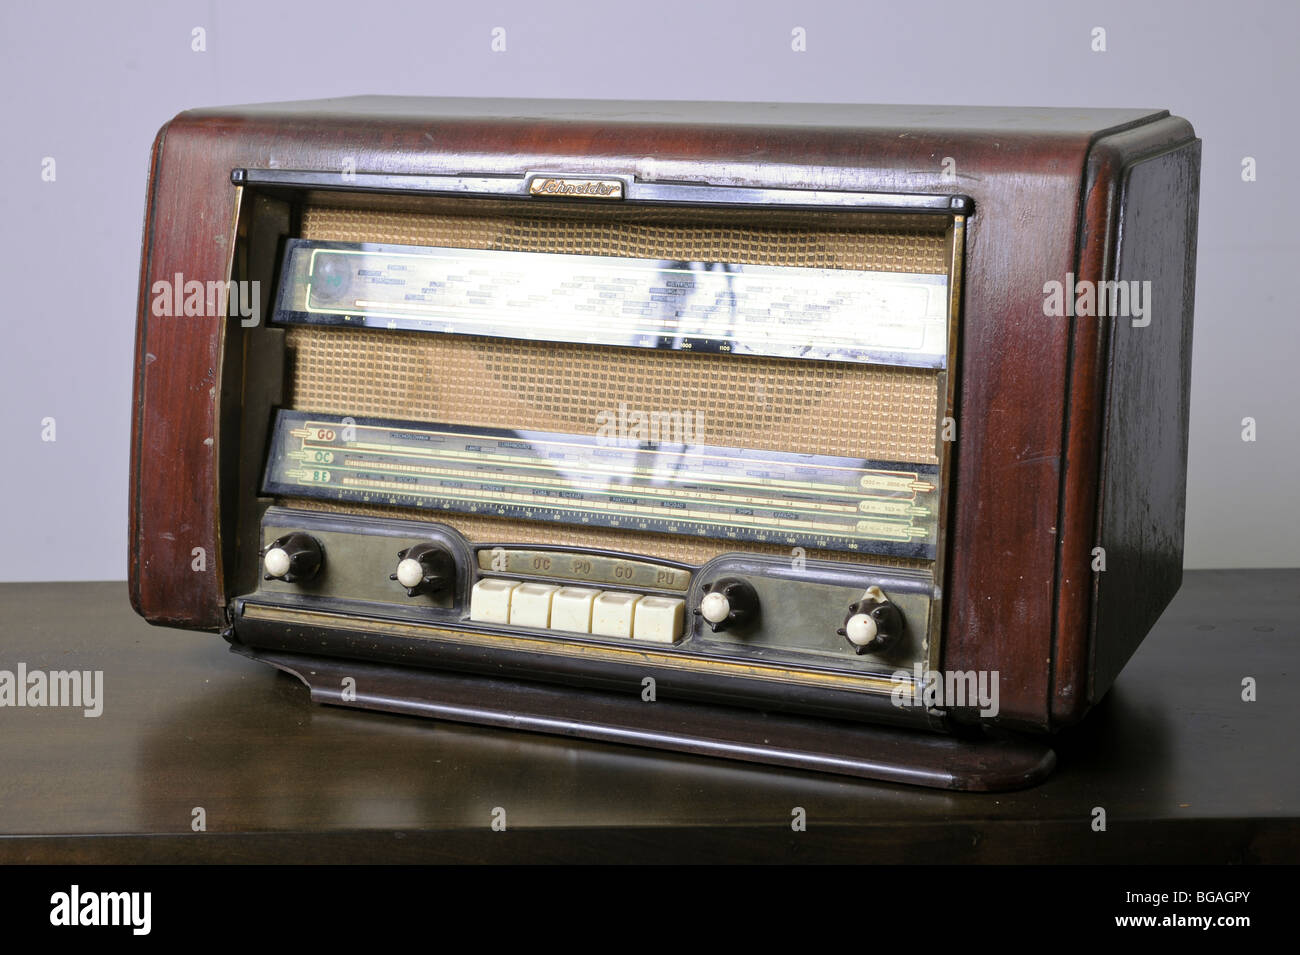 Cutout of a retro Schneider radio receiver on white background Stock Photo